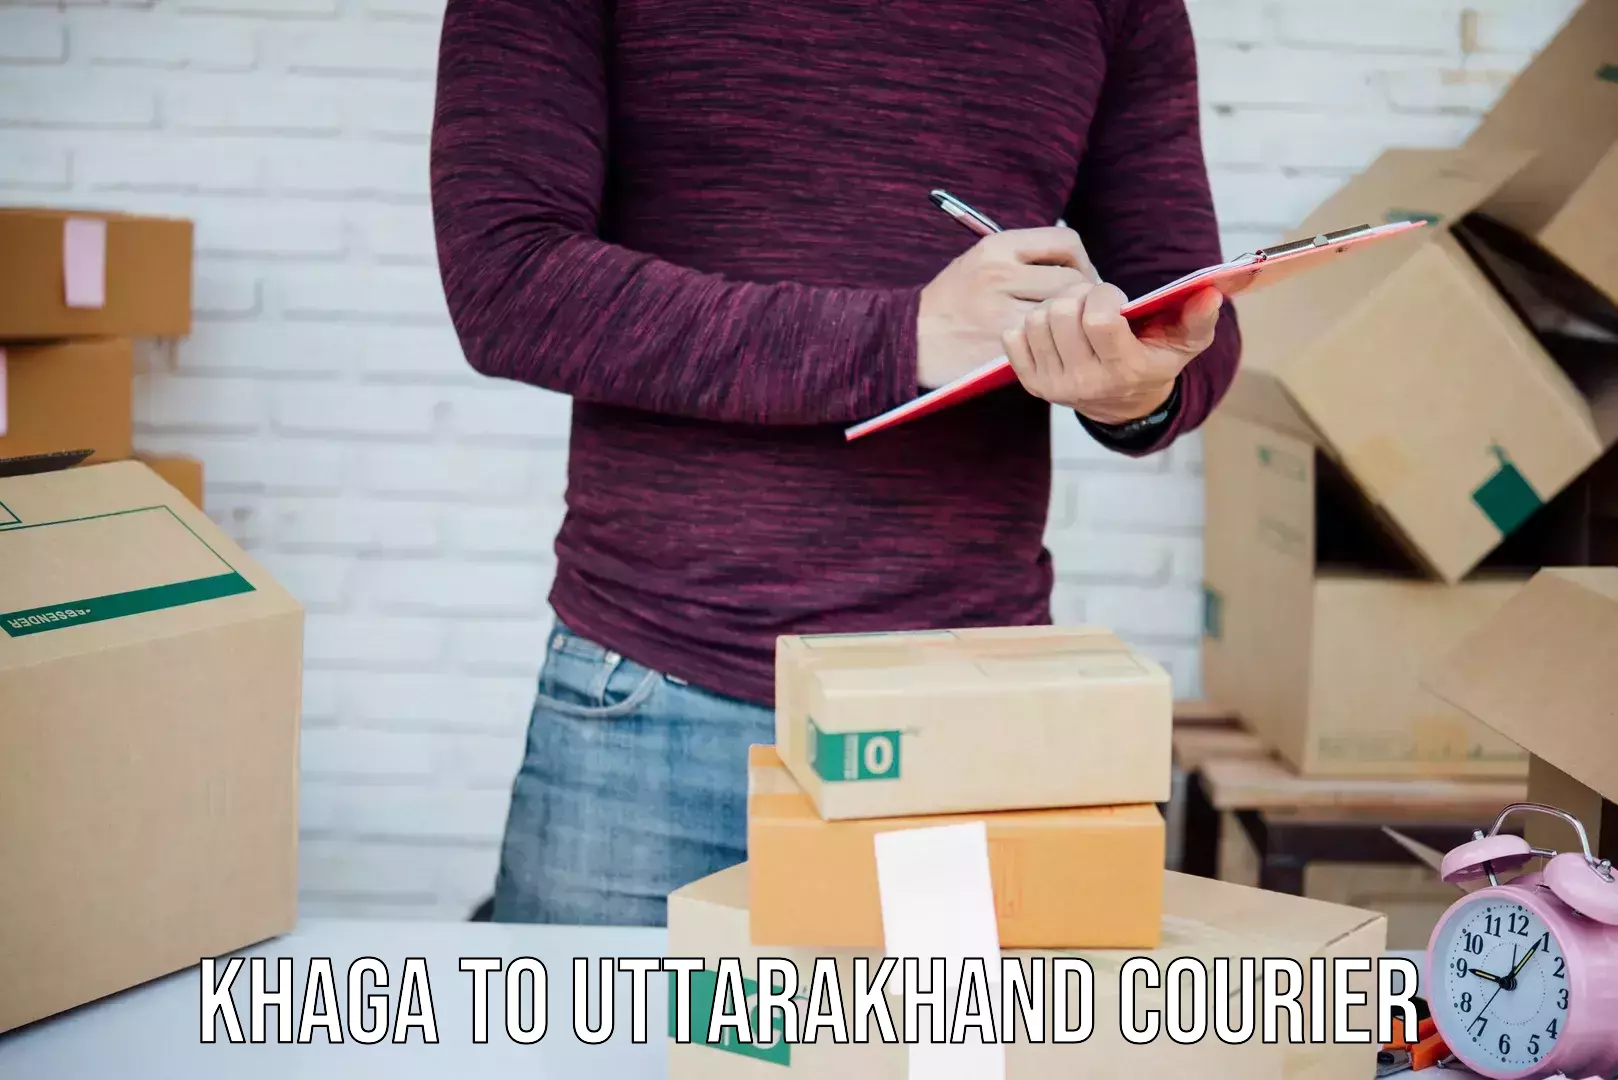 Automated parcel services Khaga to Uttarakhand